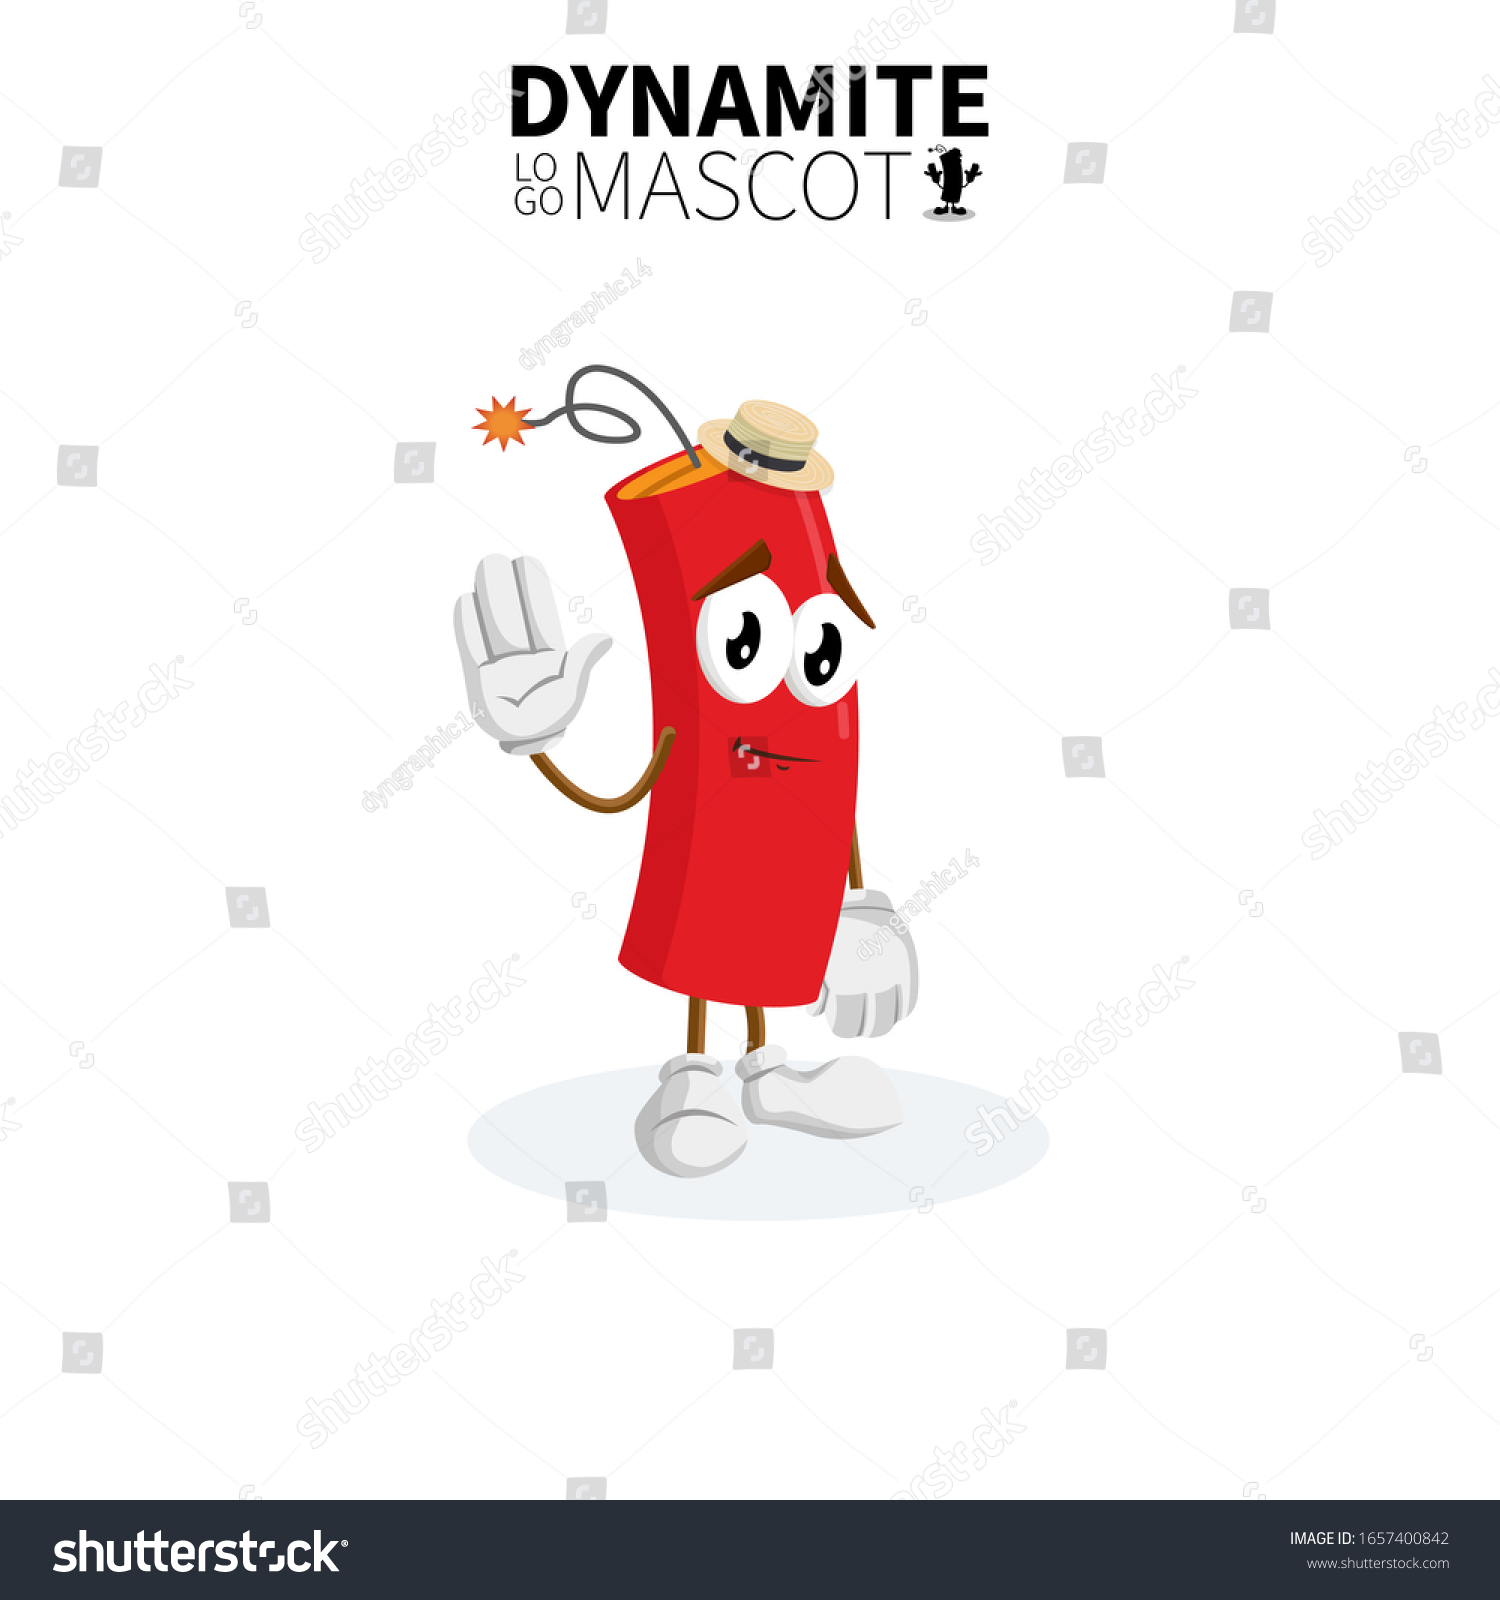 かわいい赤いダイナマイトキャラクターキャラクターのベクターイラスト 漫画のダイナマイトマスコット のベクター画像素材 ロイヤリティフリー